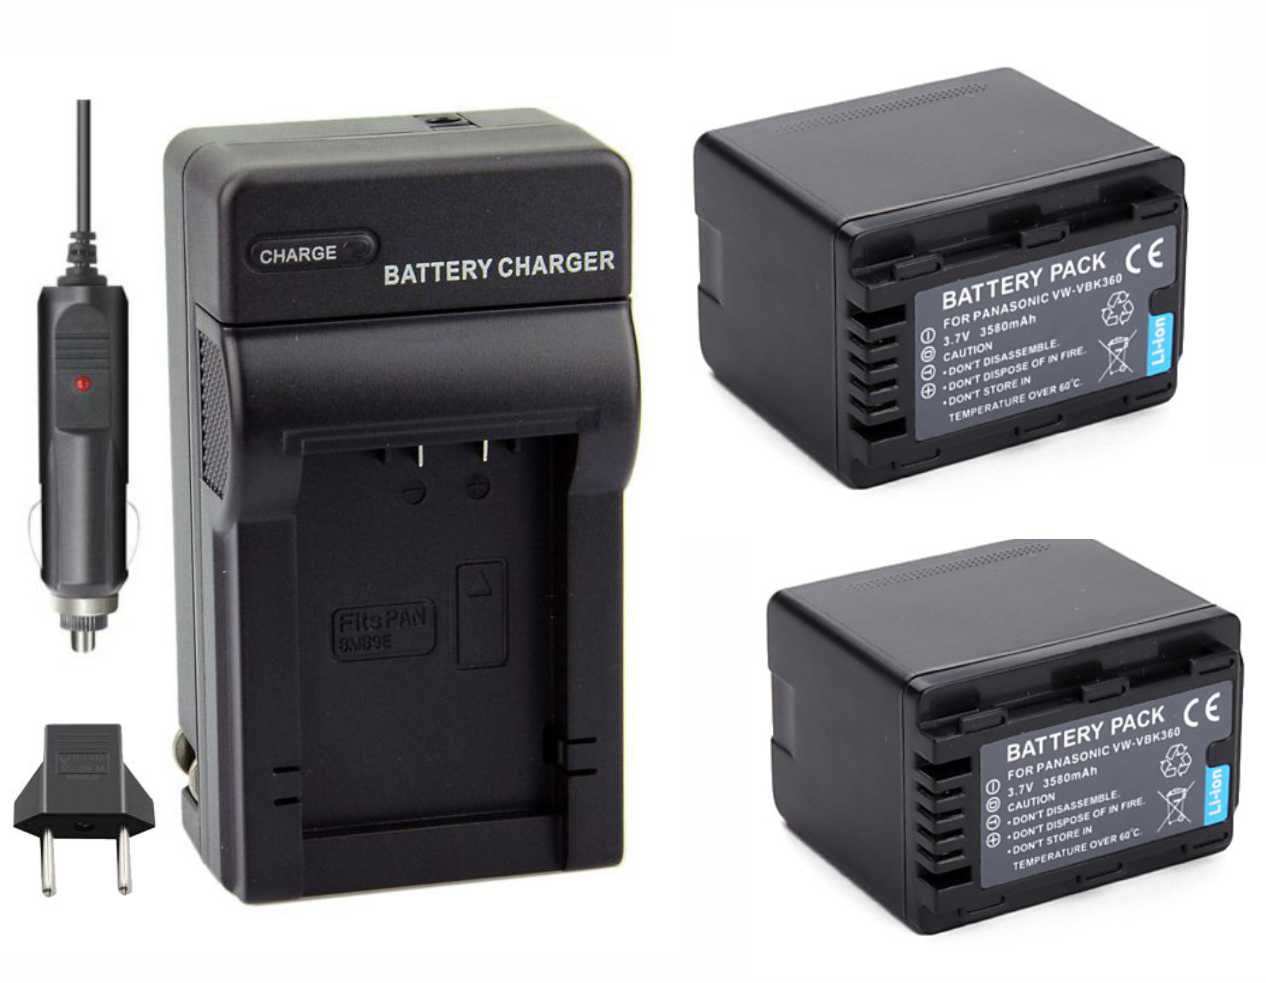 2 baterias VW-VBK360 + carregador para Panasonic